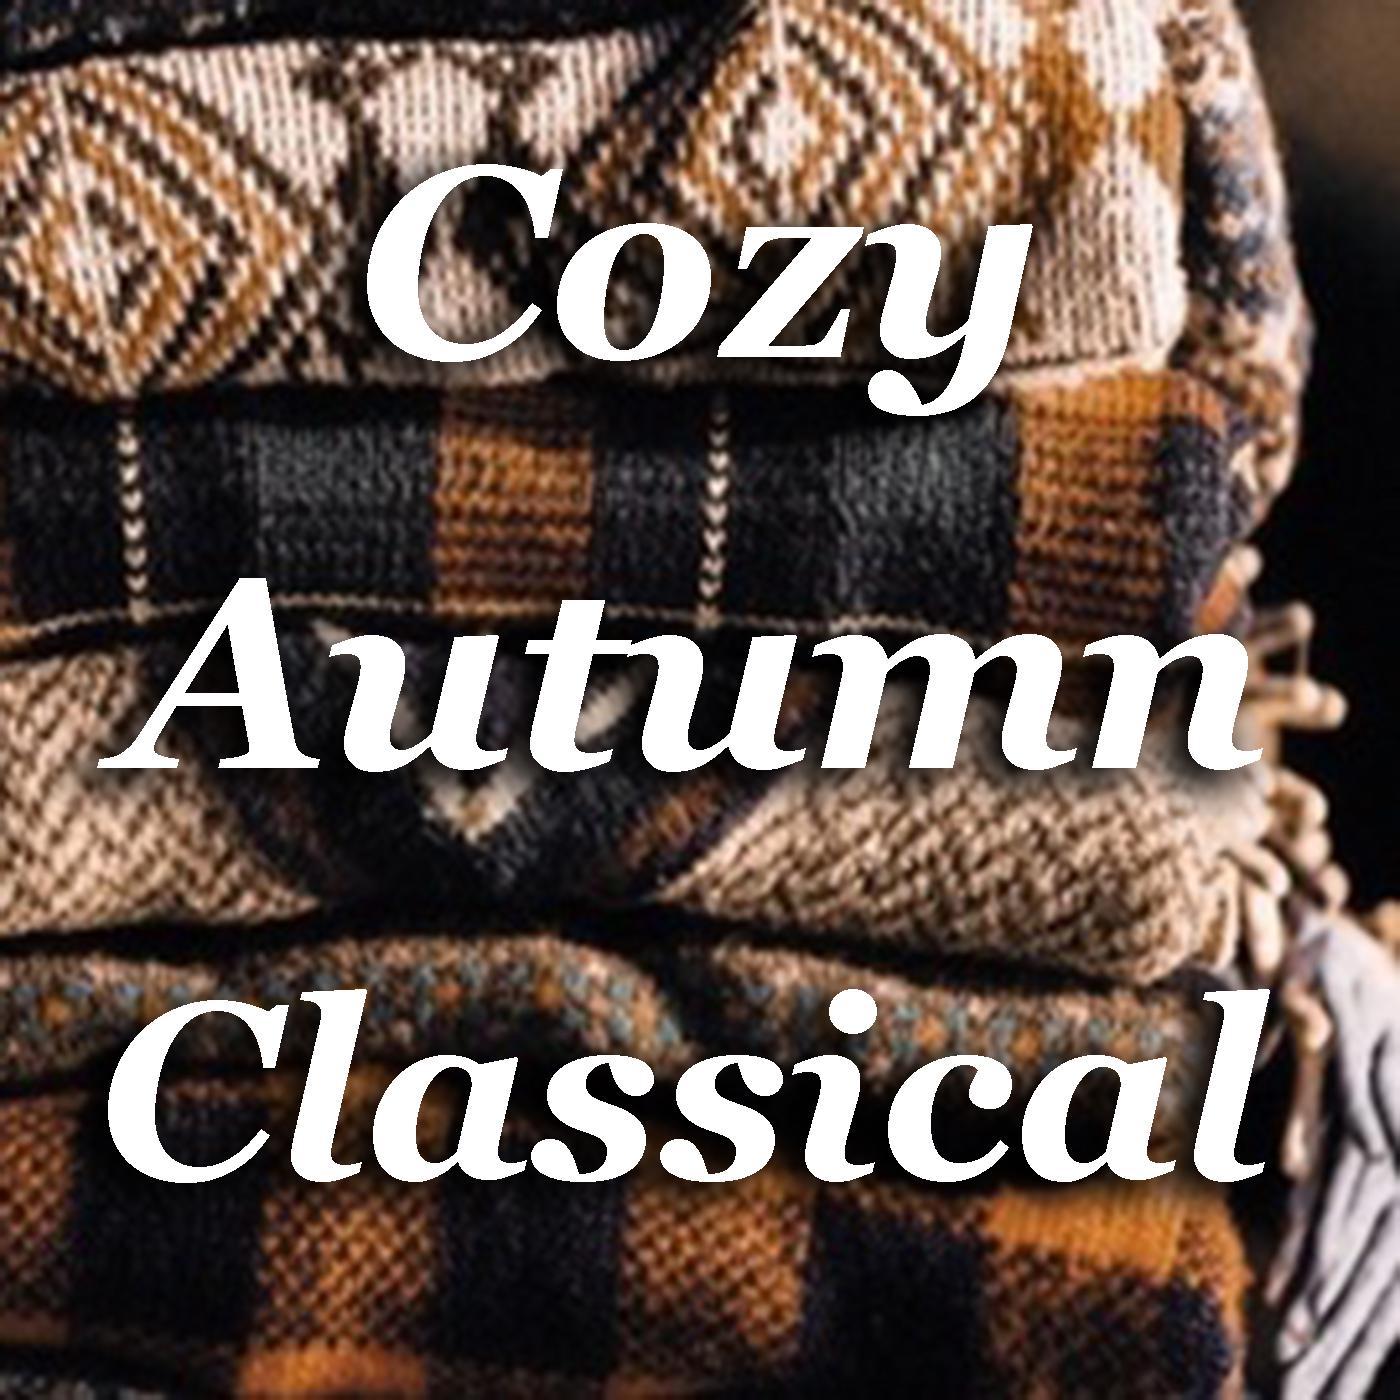 Cozy Autumn Classical